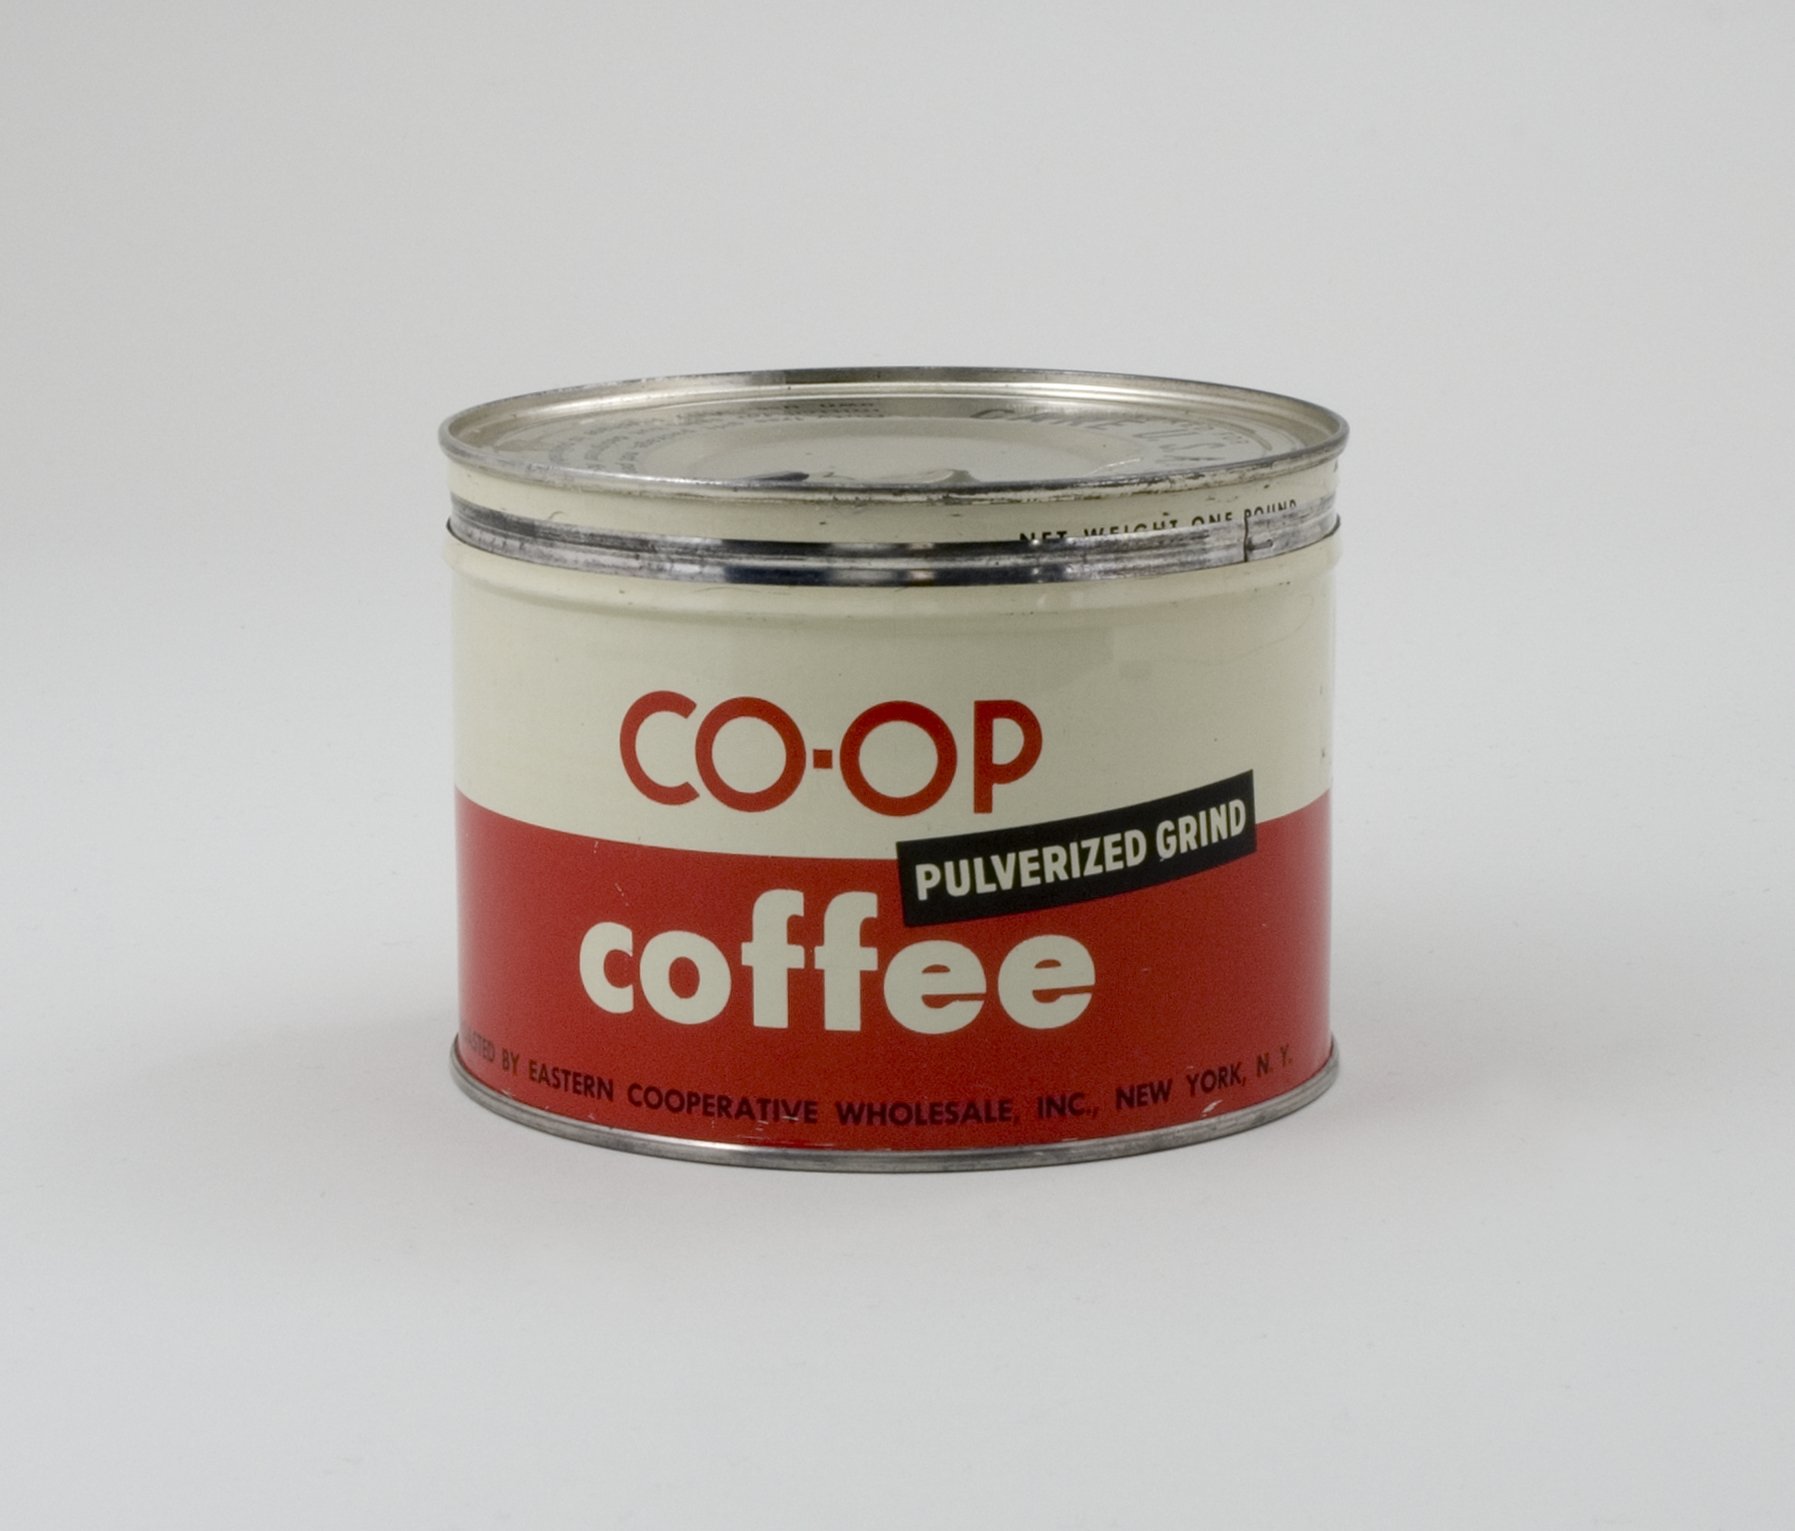 Blechdose aus Care-Paket "CO-OP Coffee - Pulverized Grind" (Stiftung Domäne Dahlem - Landgut und Museum, Weiternutzung nur mit Genehmigung des Museums CC BY-NC-SA)